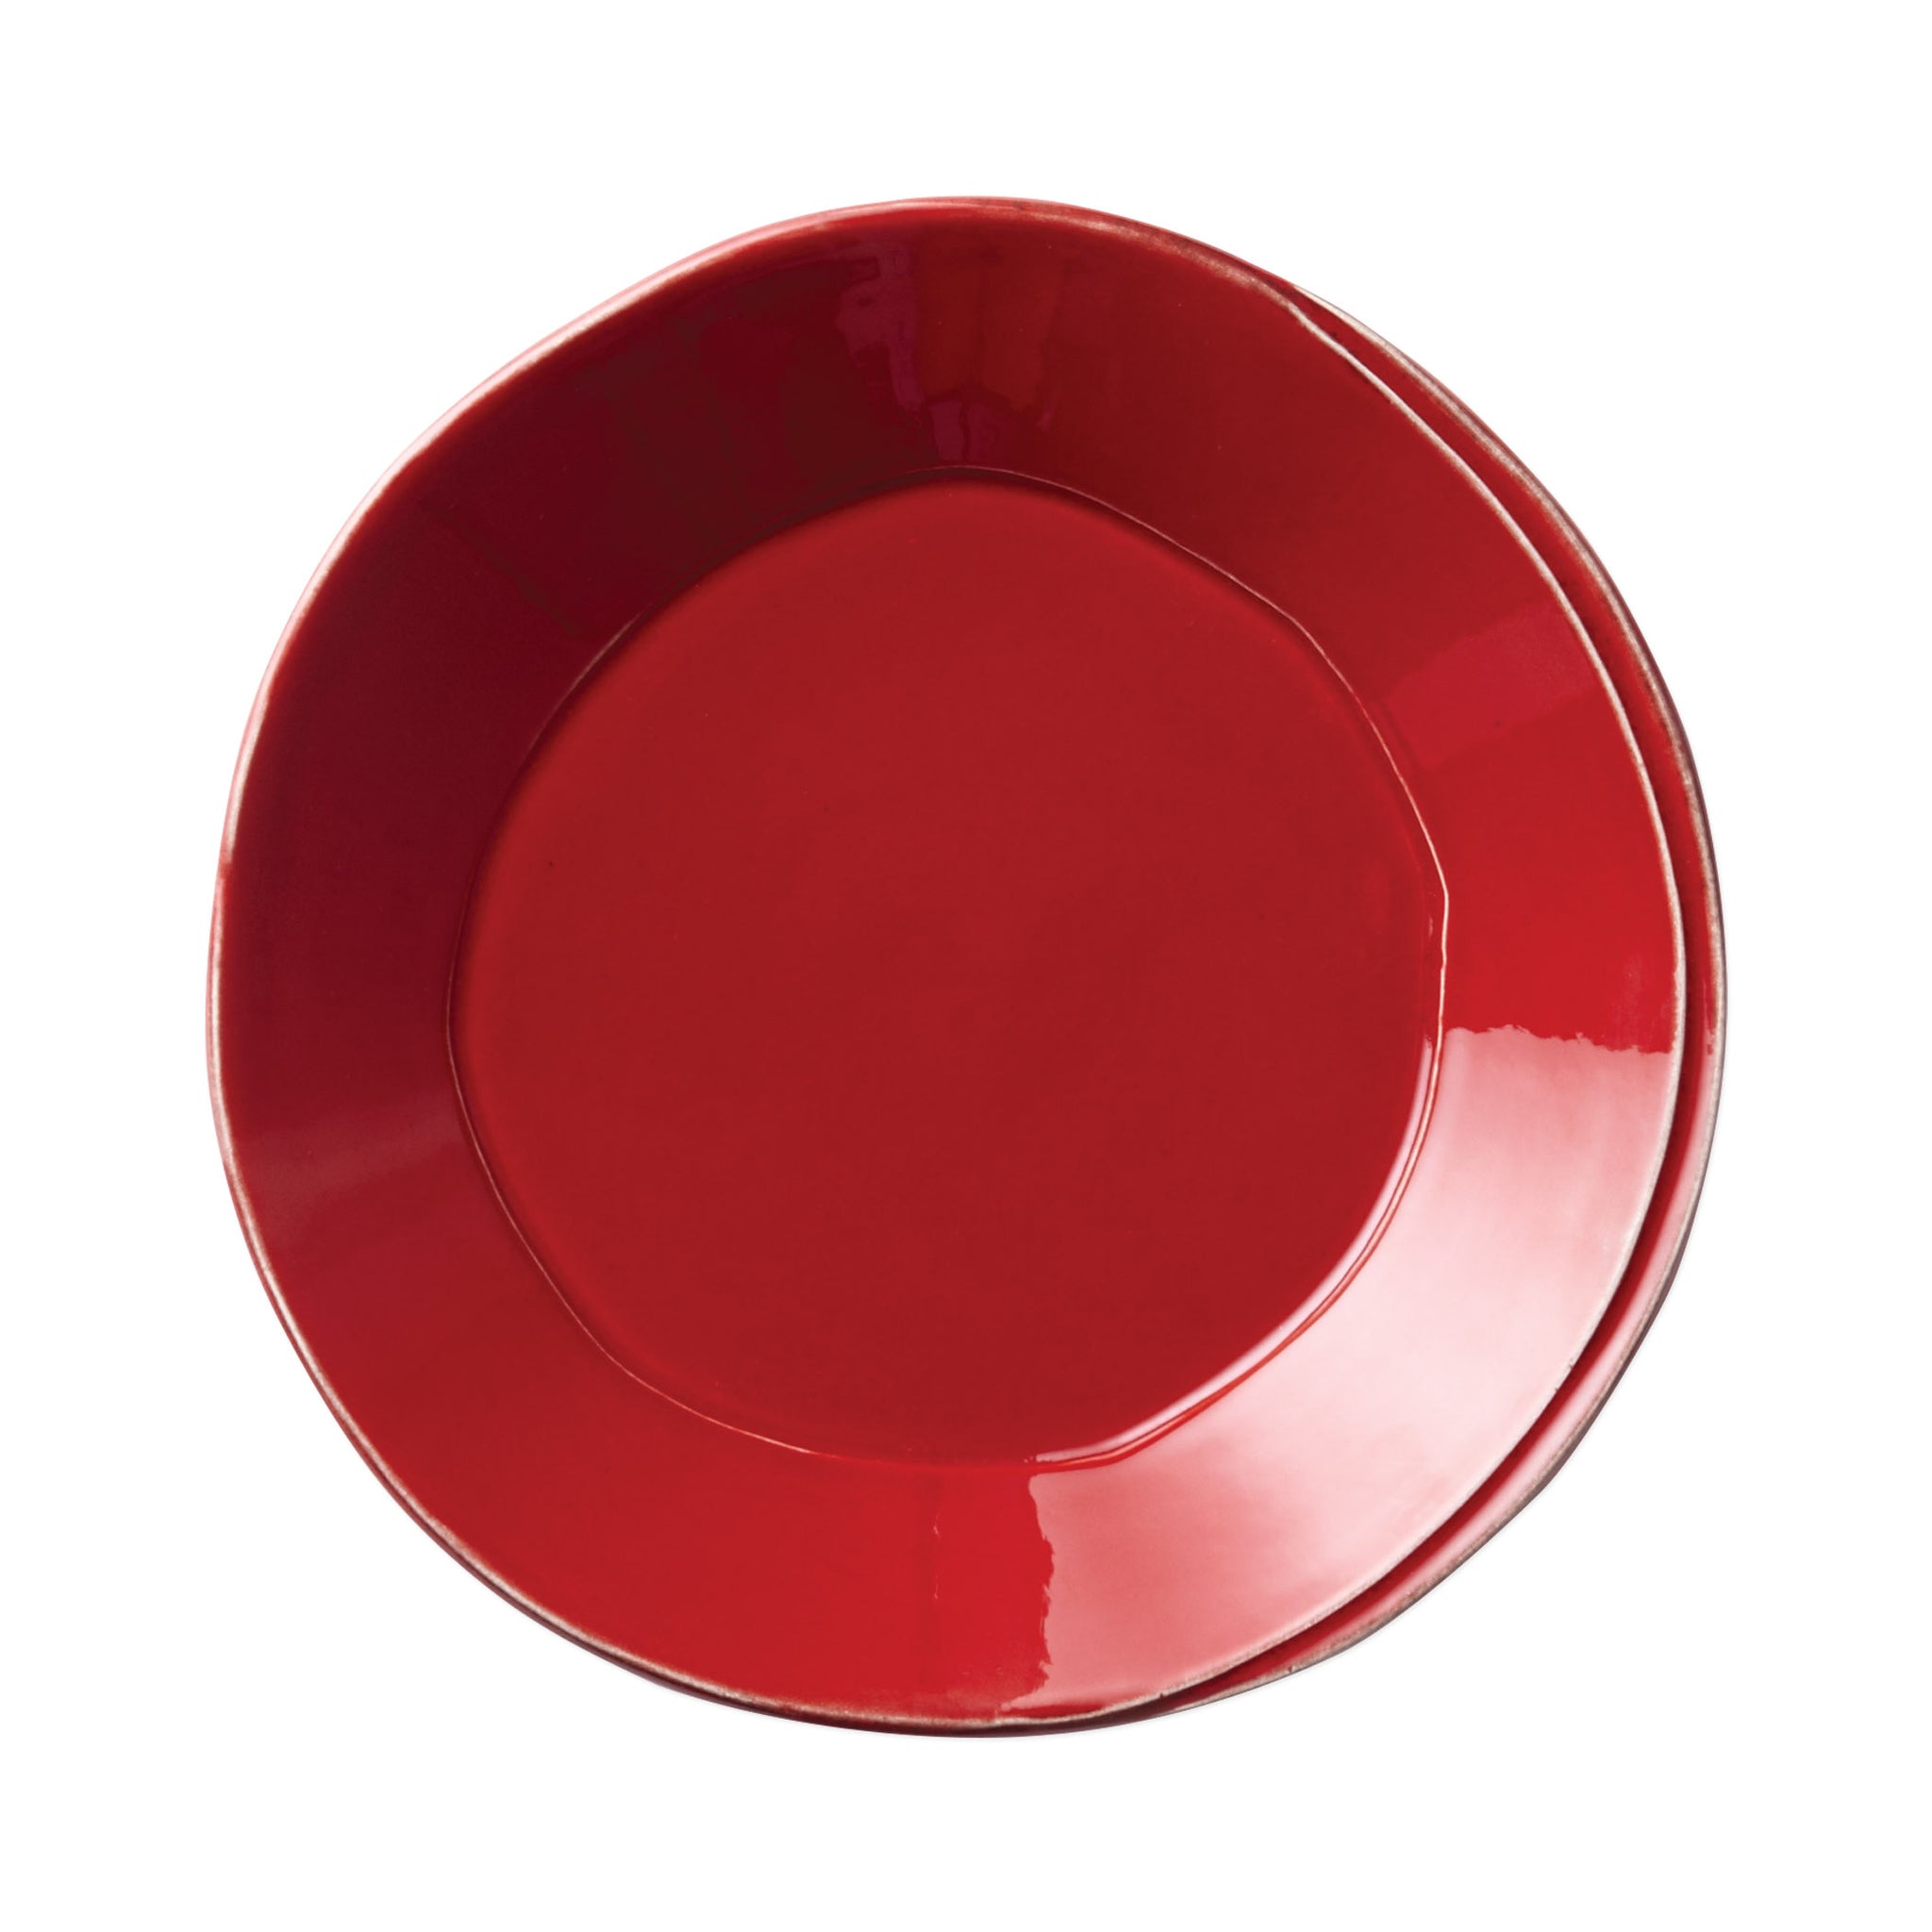 Lastra European Dinner Plate - Set of 4 - Red